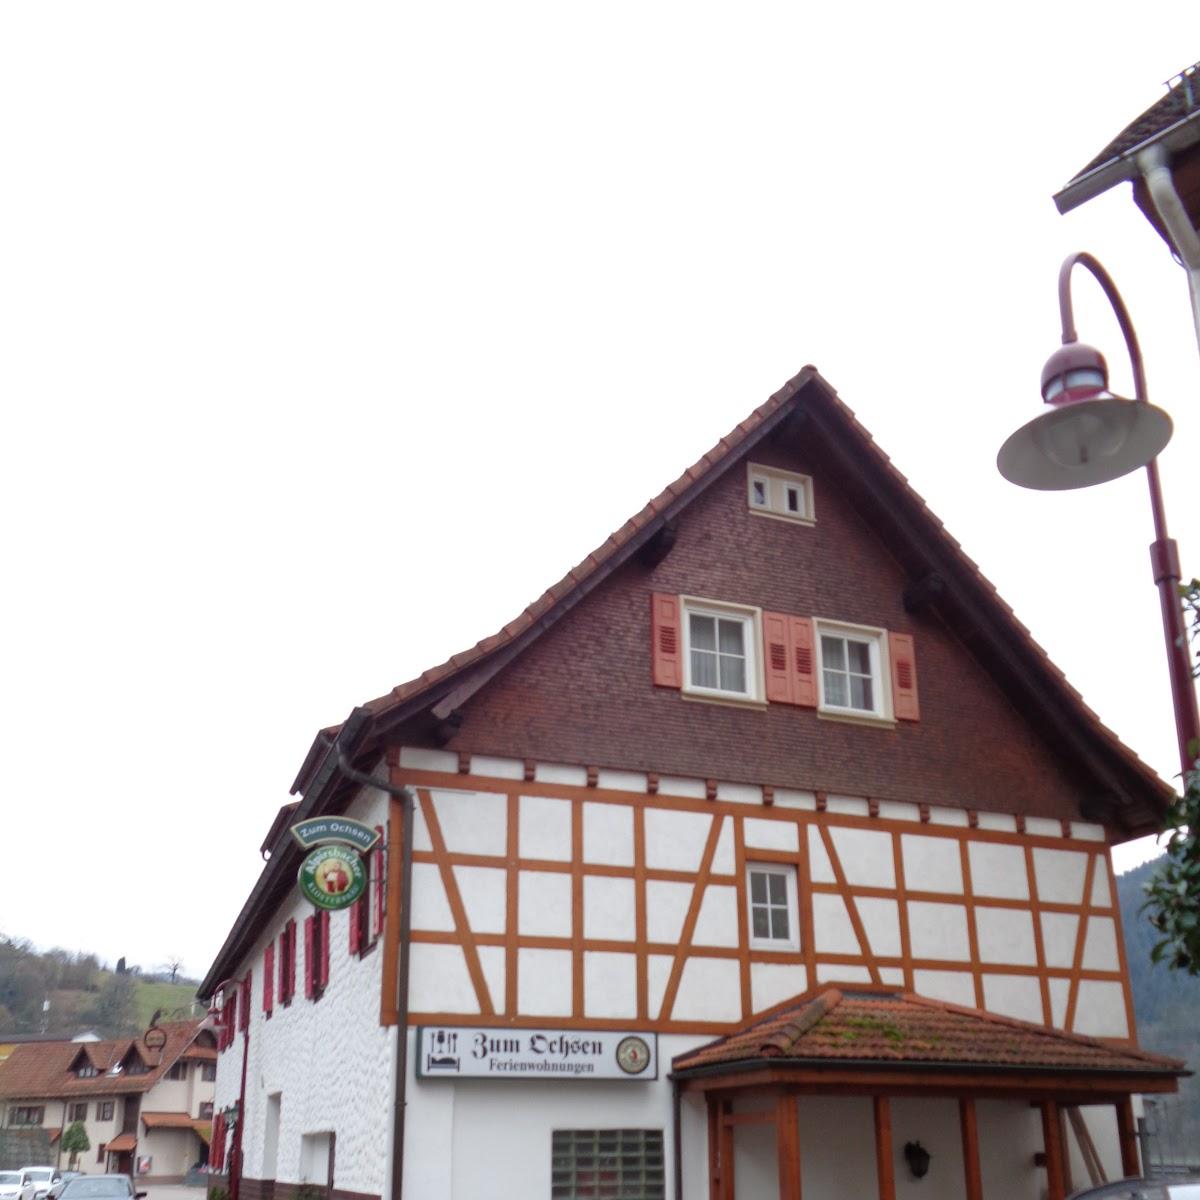 Restaurant "Ingrid Wörner" in Forbach